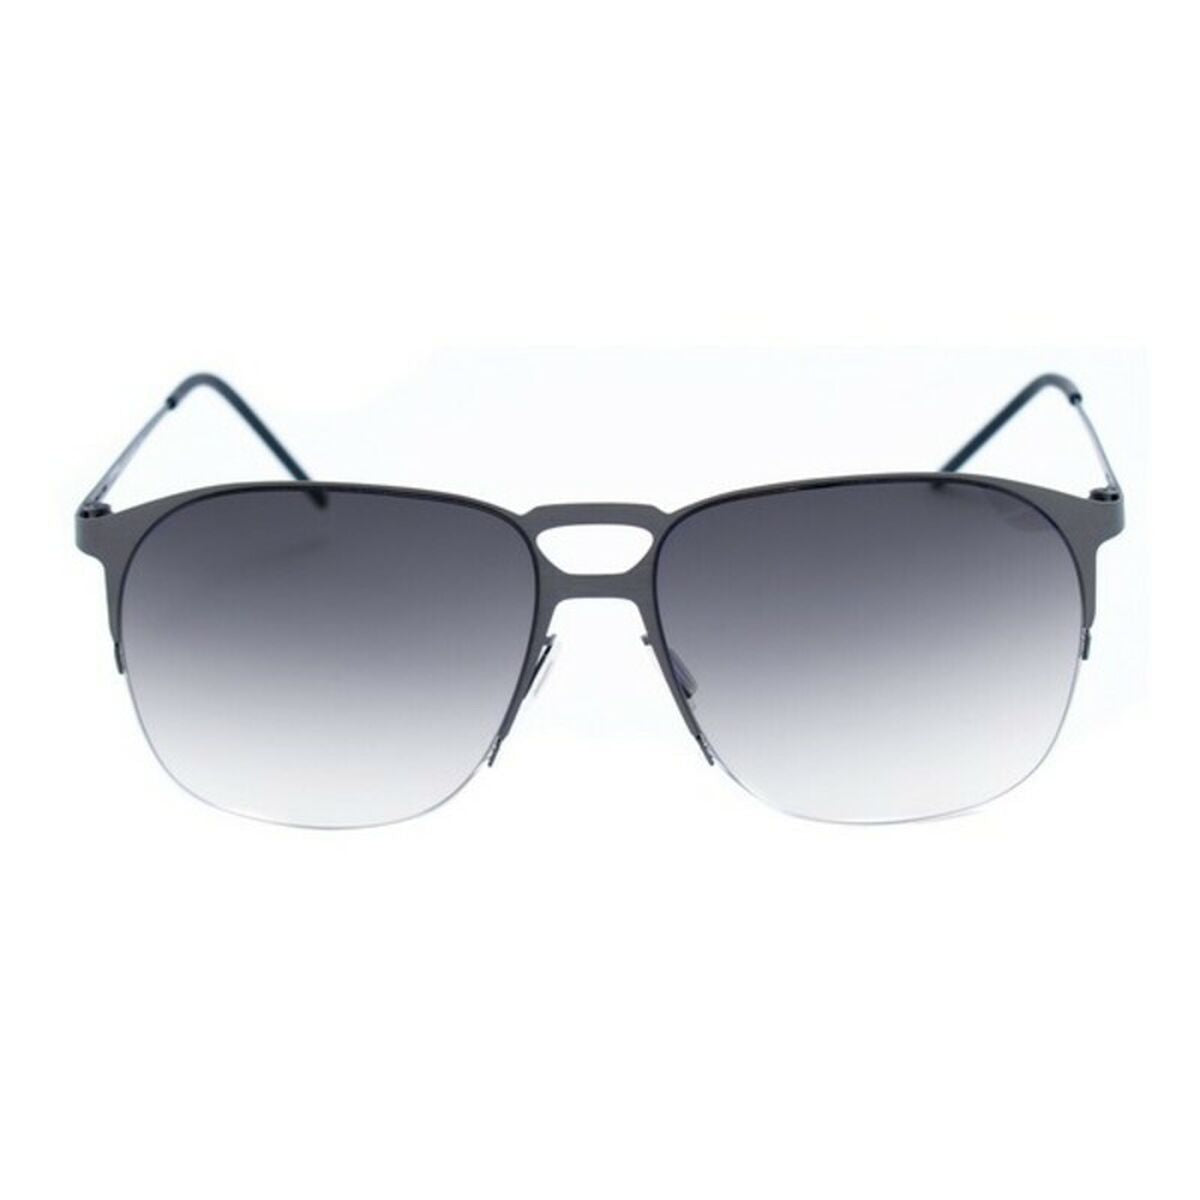 Men's Sunglasses Italia Independent 0211-078-000 ø 57 mm